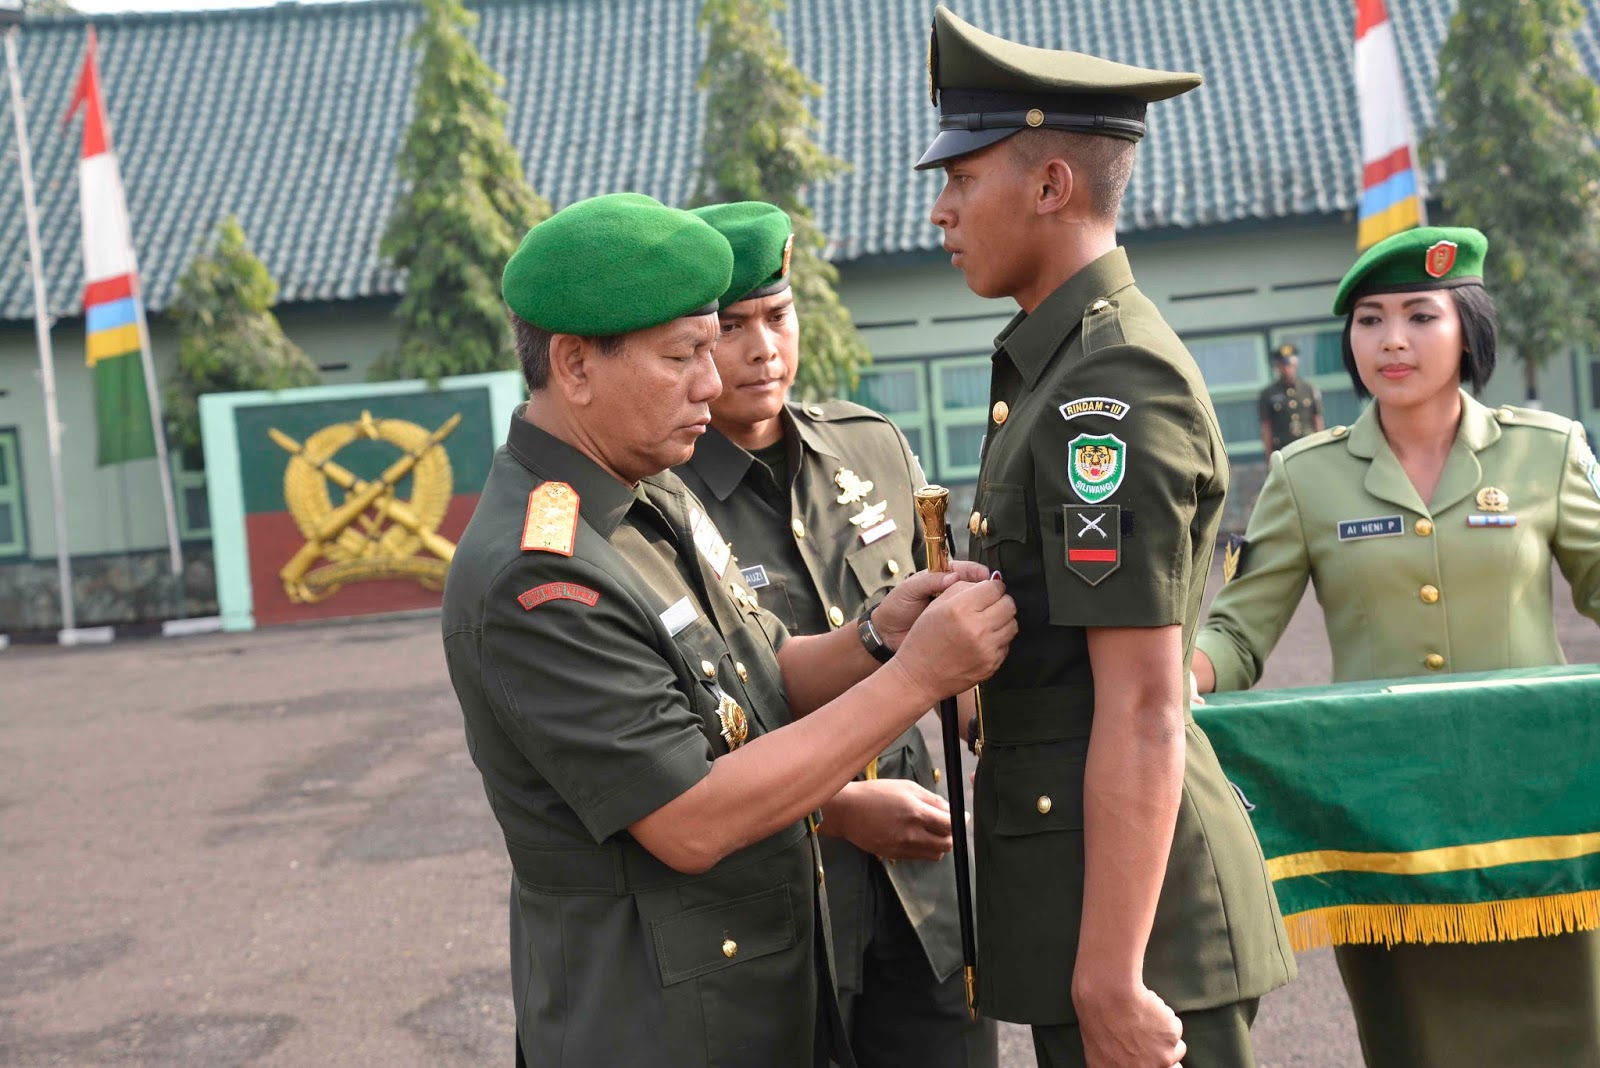 Kenali Tentara Nasional Indonesia Dengan Membedakan Warna Seragam